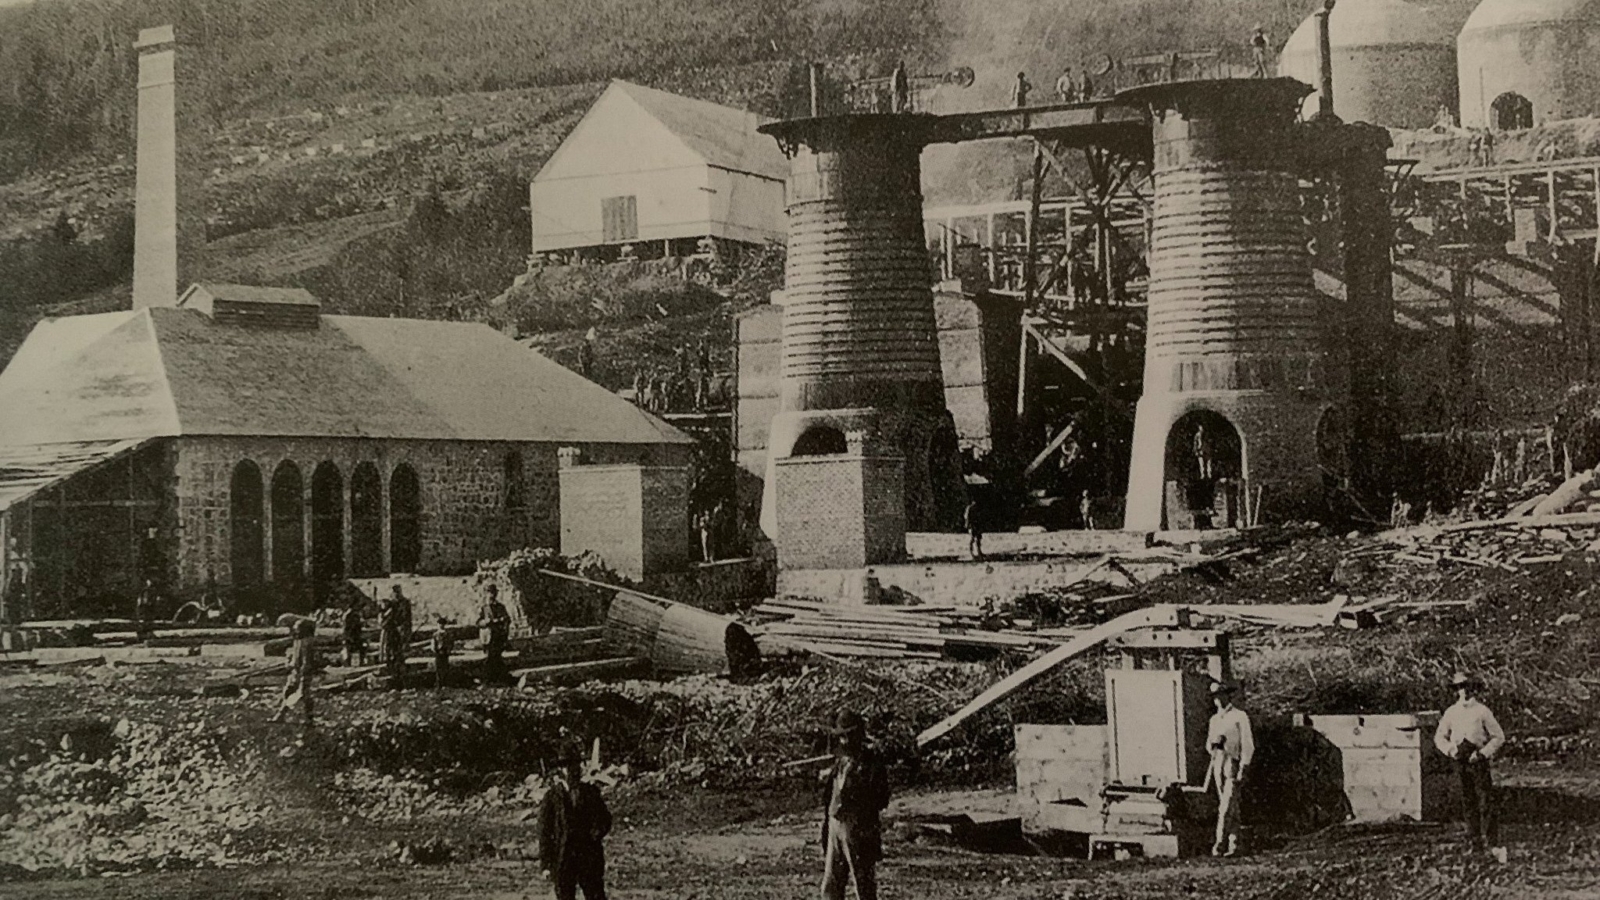 Ancienne mine de fer de St-Urbain, prise en 1873 (Coll R.Tremblay et André Simard)